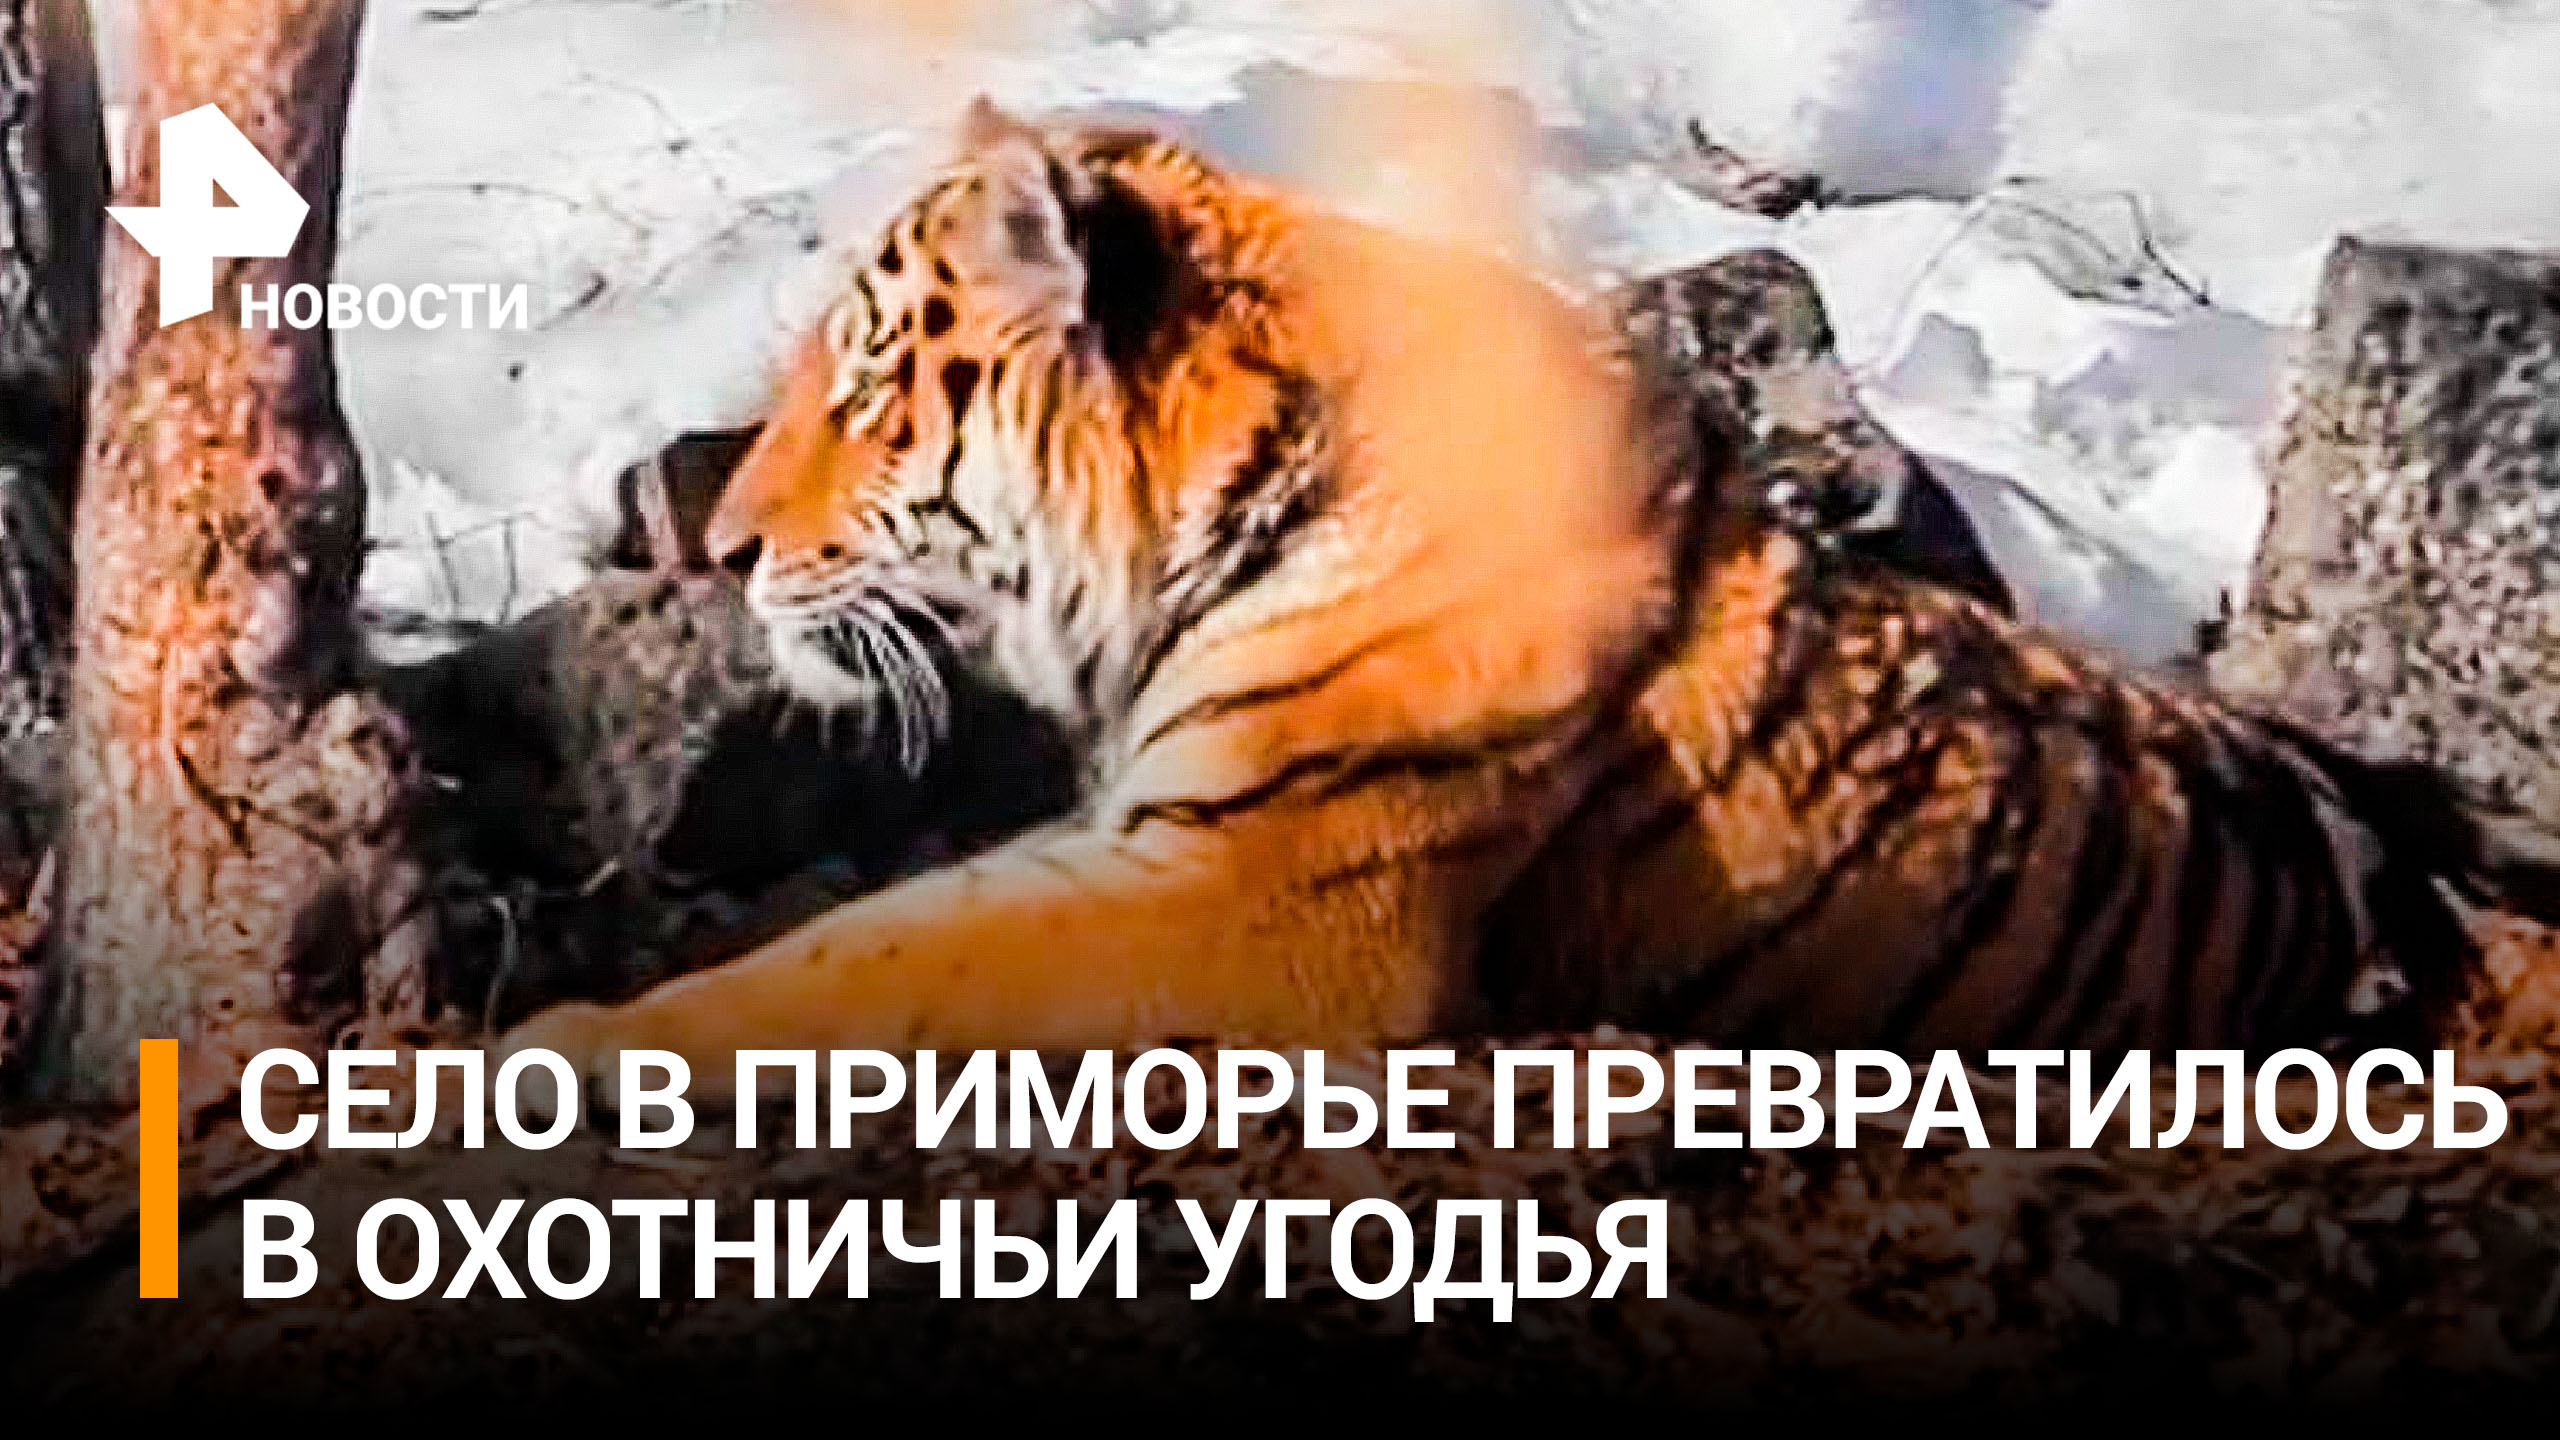 Съевший собаку тигр держит в страхе жителей села в Приморье / РЕН Новости